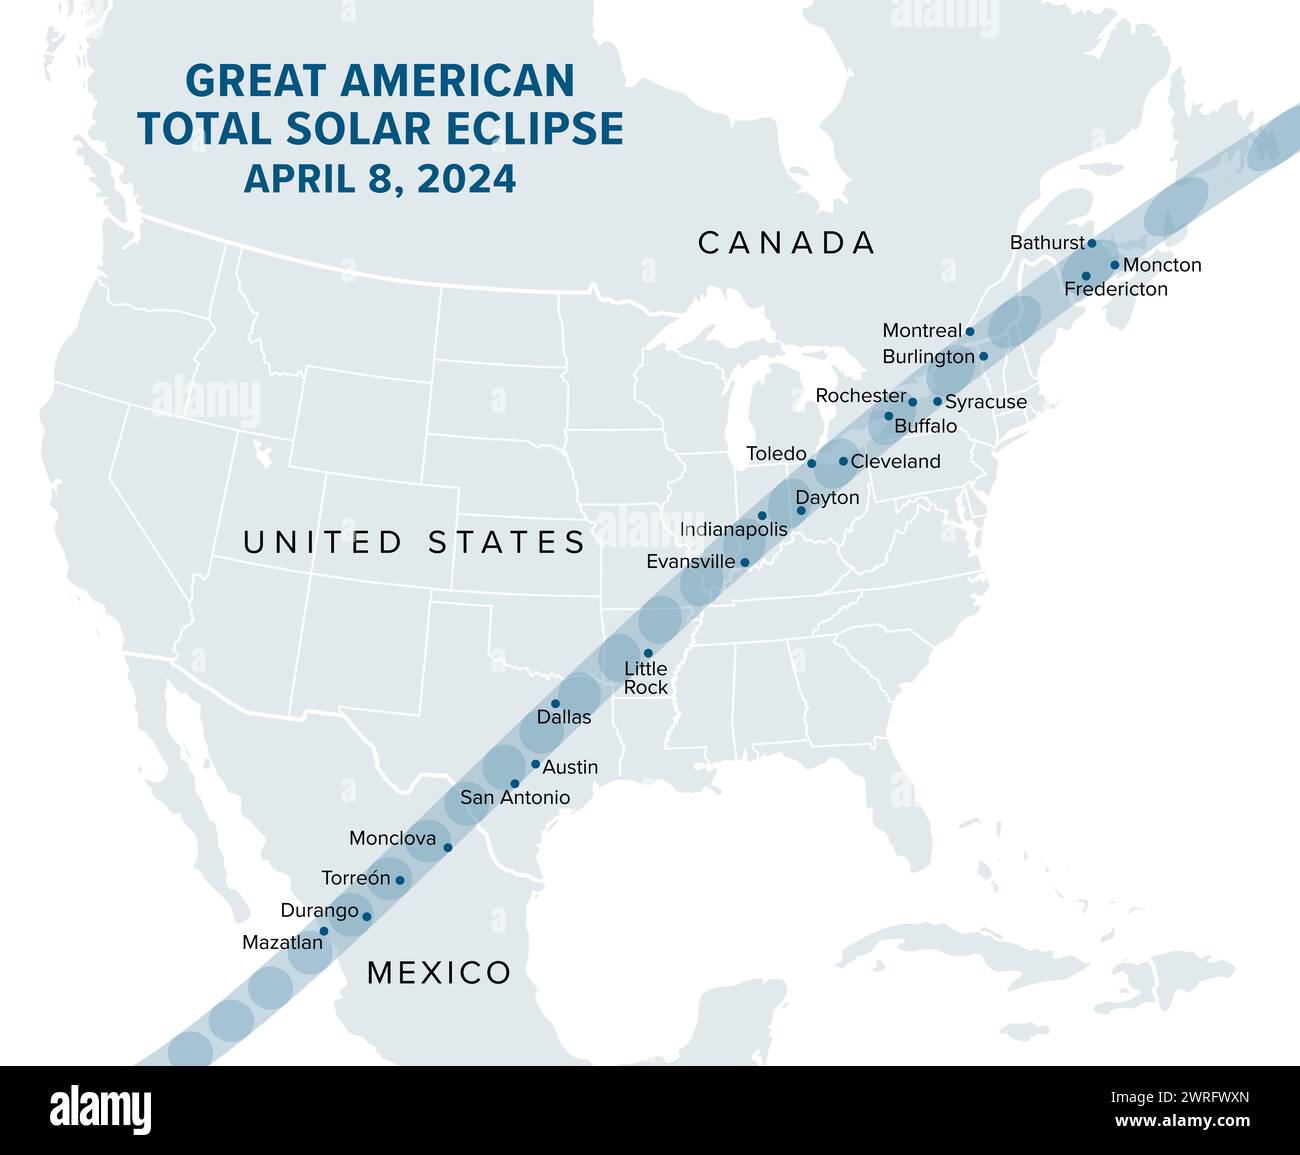 Great American total Solar Eclipse, le 8 avril 2024, carte politique. Grandes villes sur le chemin de la totalité, visibles à travers l'Amérique du Nord. Banque D'Images